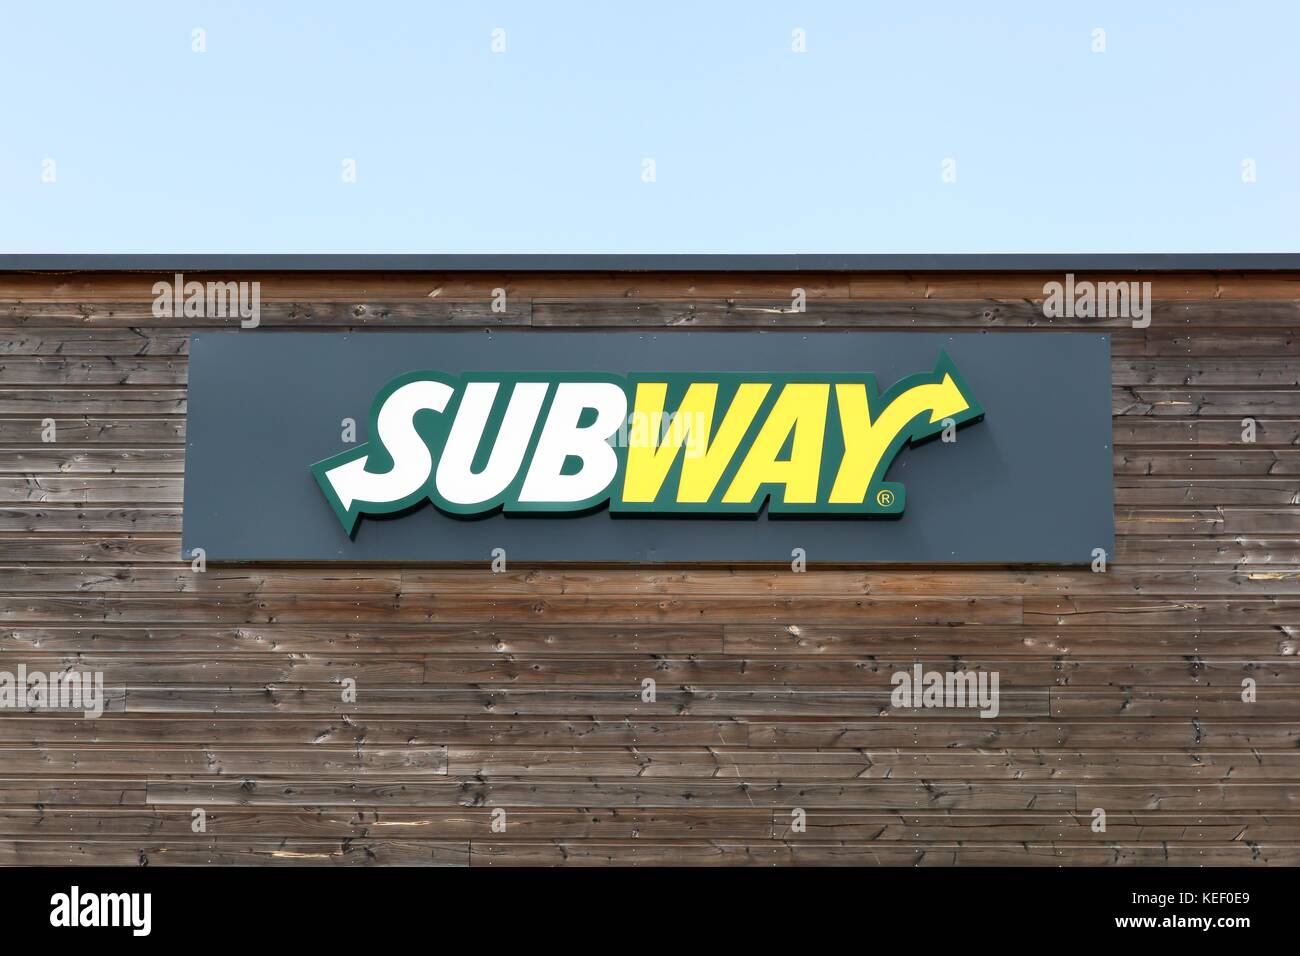 Cholet, Francia - 25 giugno 2016:alla metropolitana logo su una facciata. La metropolitana è un americano di un ristorante fast food in franchising che vende principalmente sandwich sottomarino Foto Stock